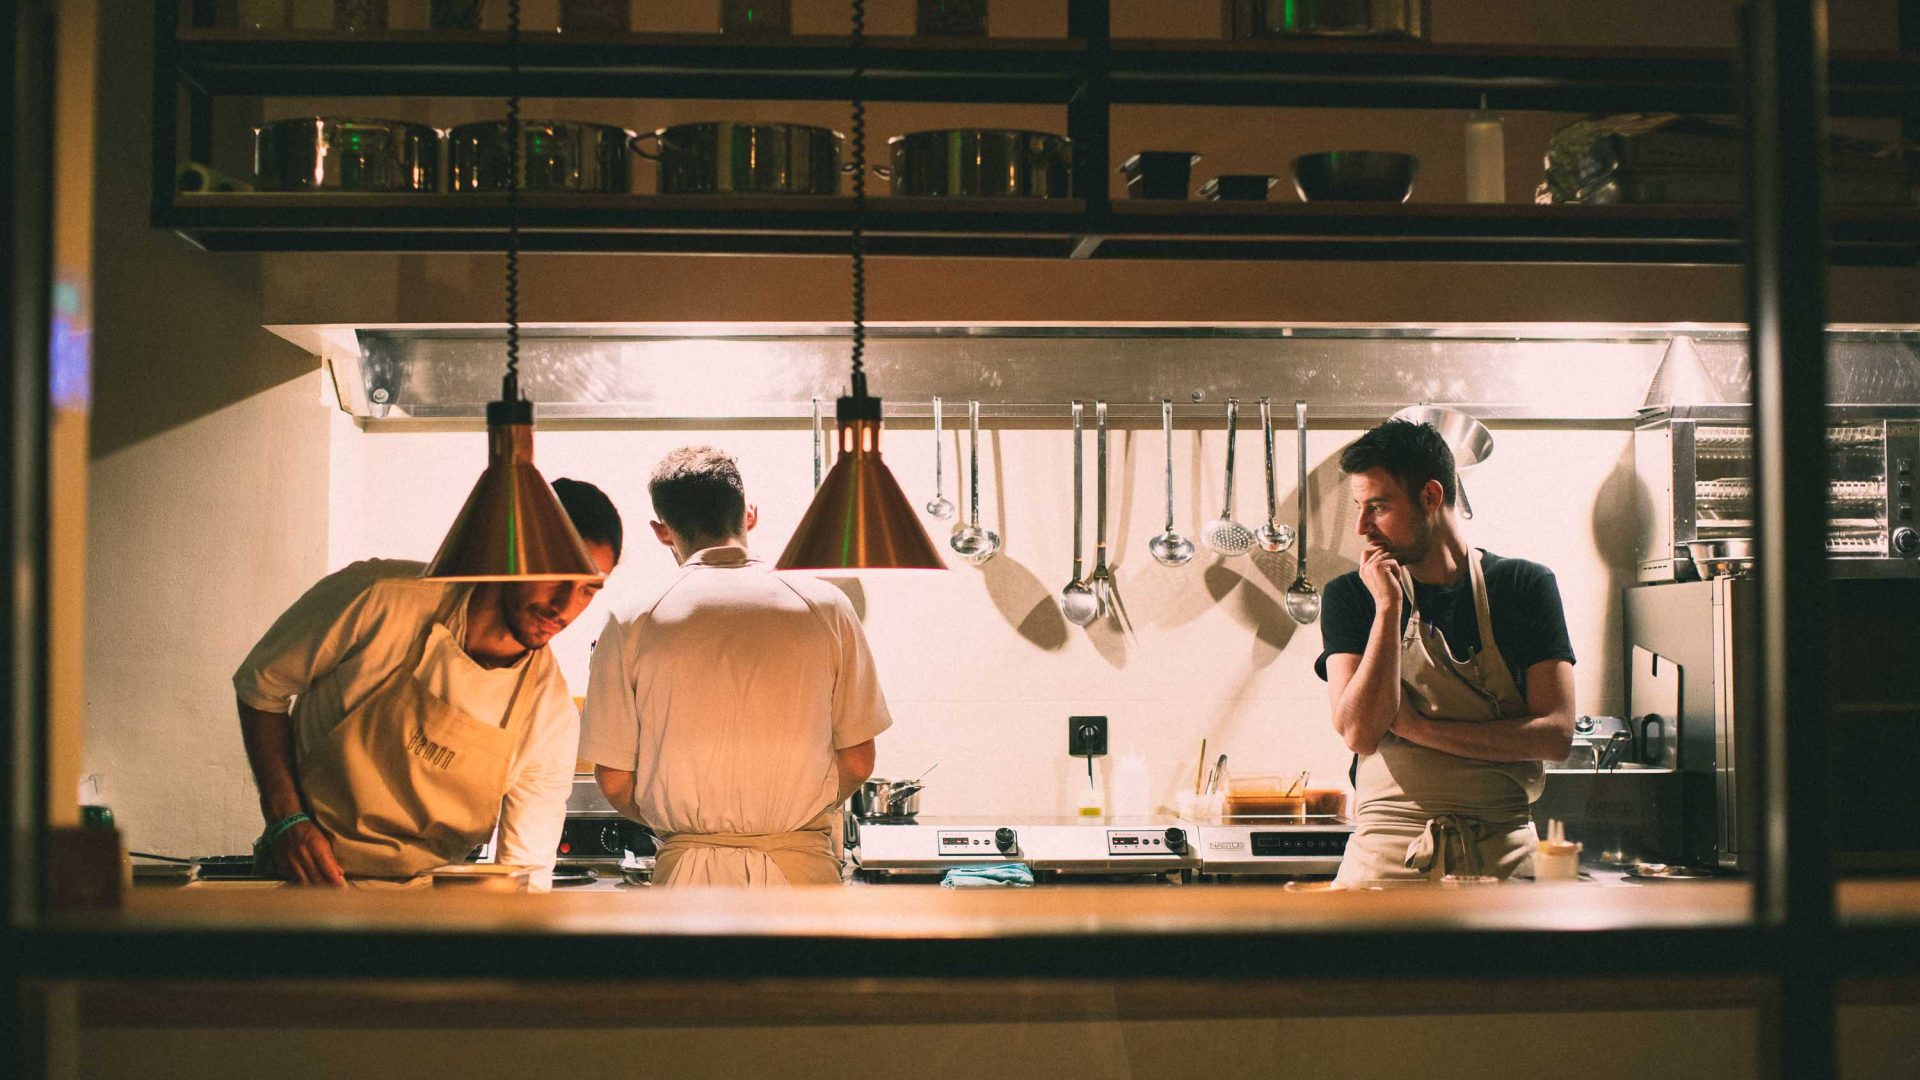 Men work in a modern kitchen.